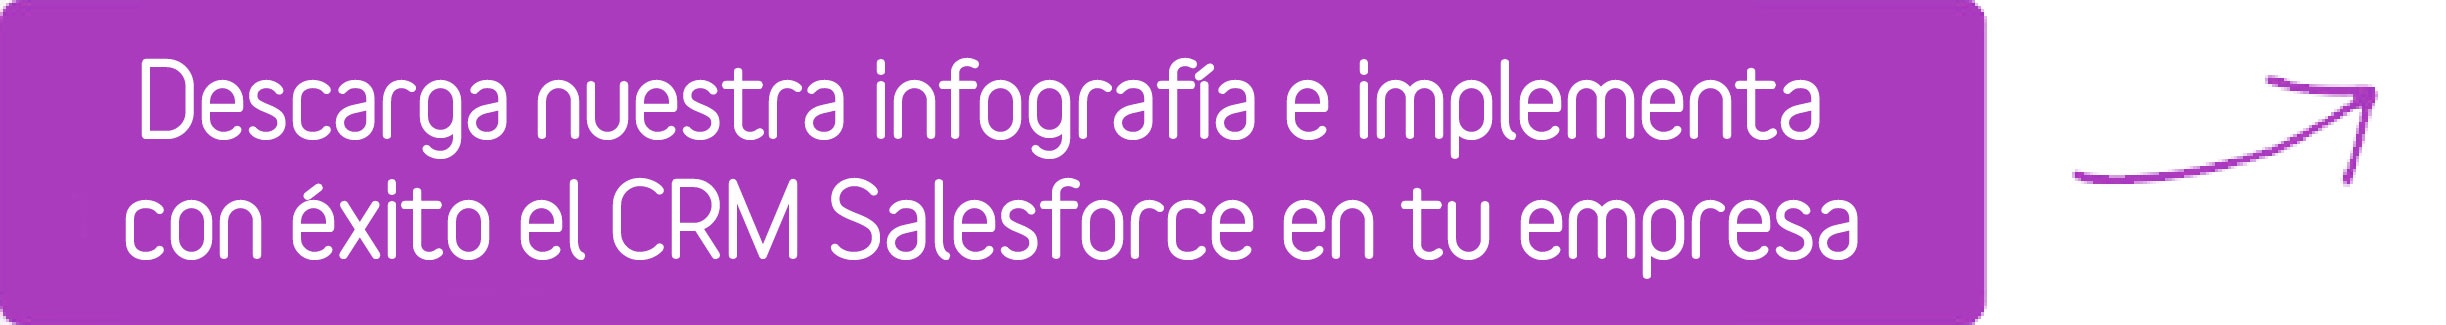 inferior_infografia_consejos_para_una_implementacion_exitosa_del_crm_salesforce-01